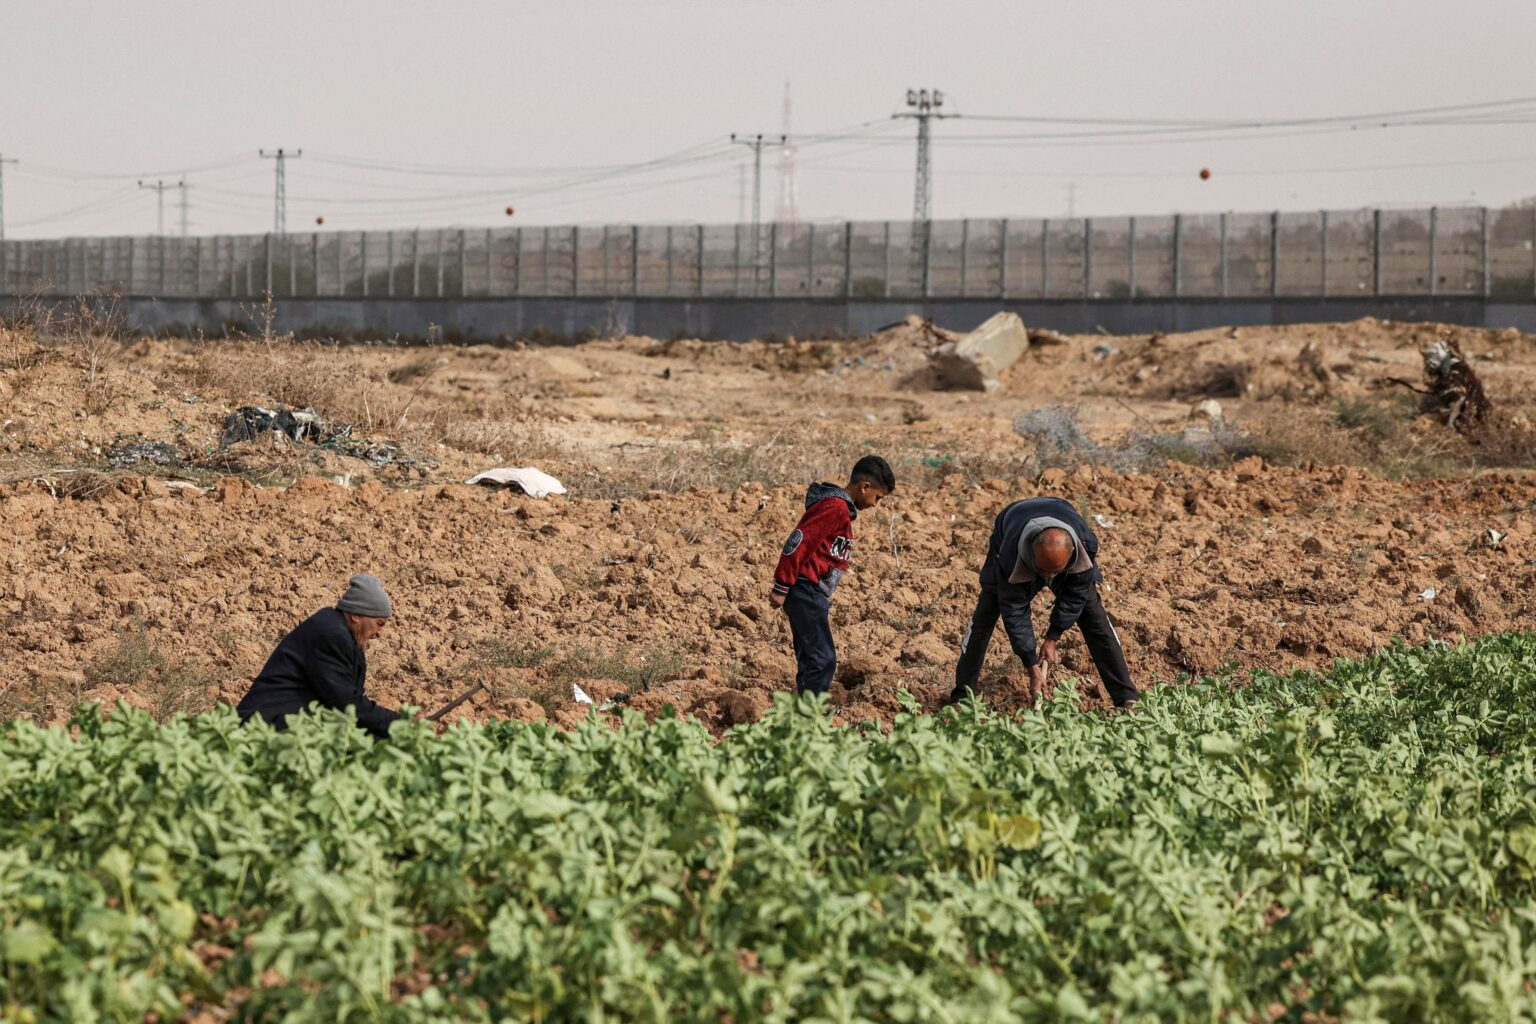 الاحتلال يطلق النار على مزارعين وصيادين في غزة